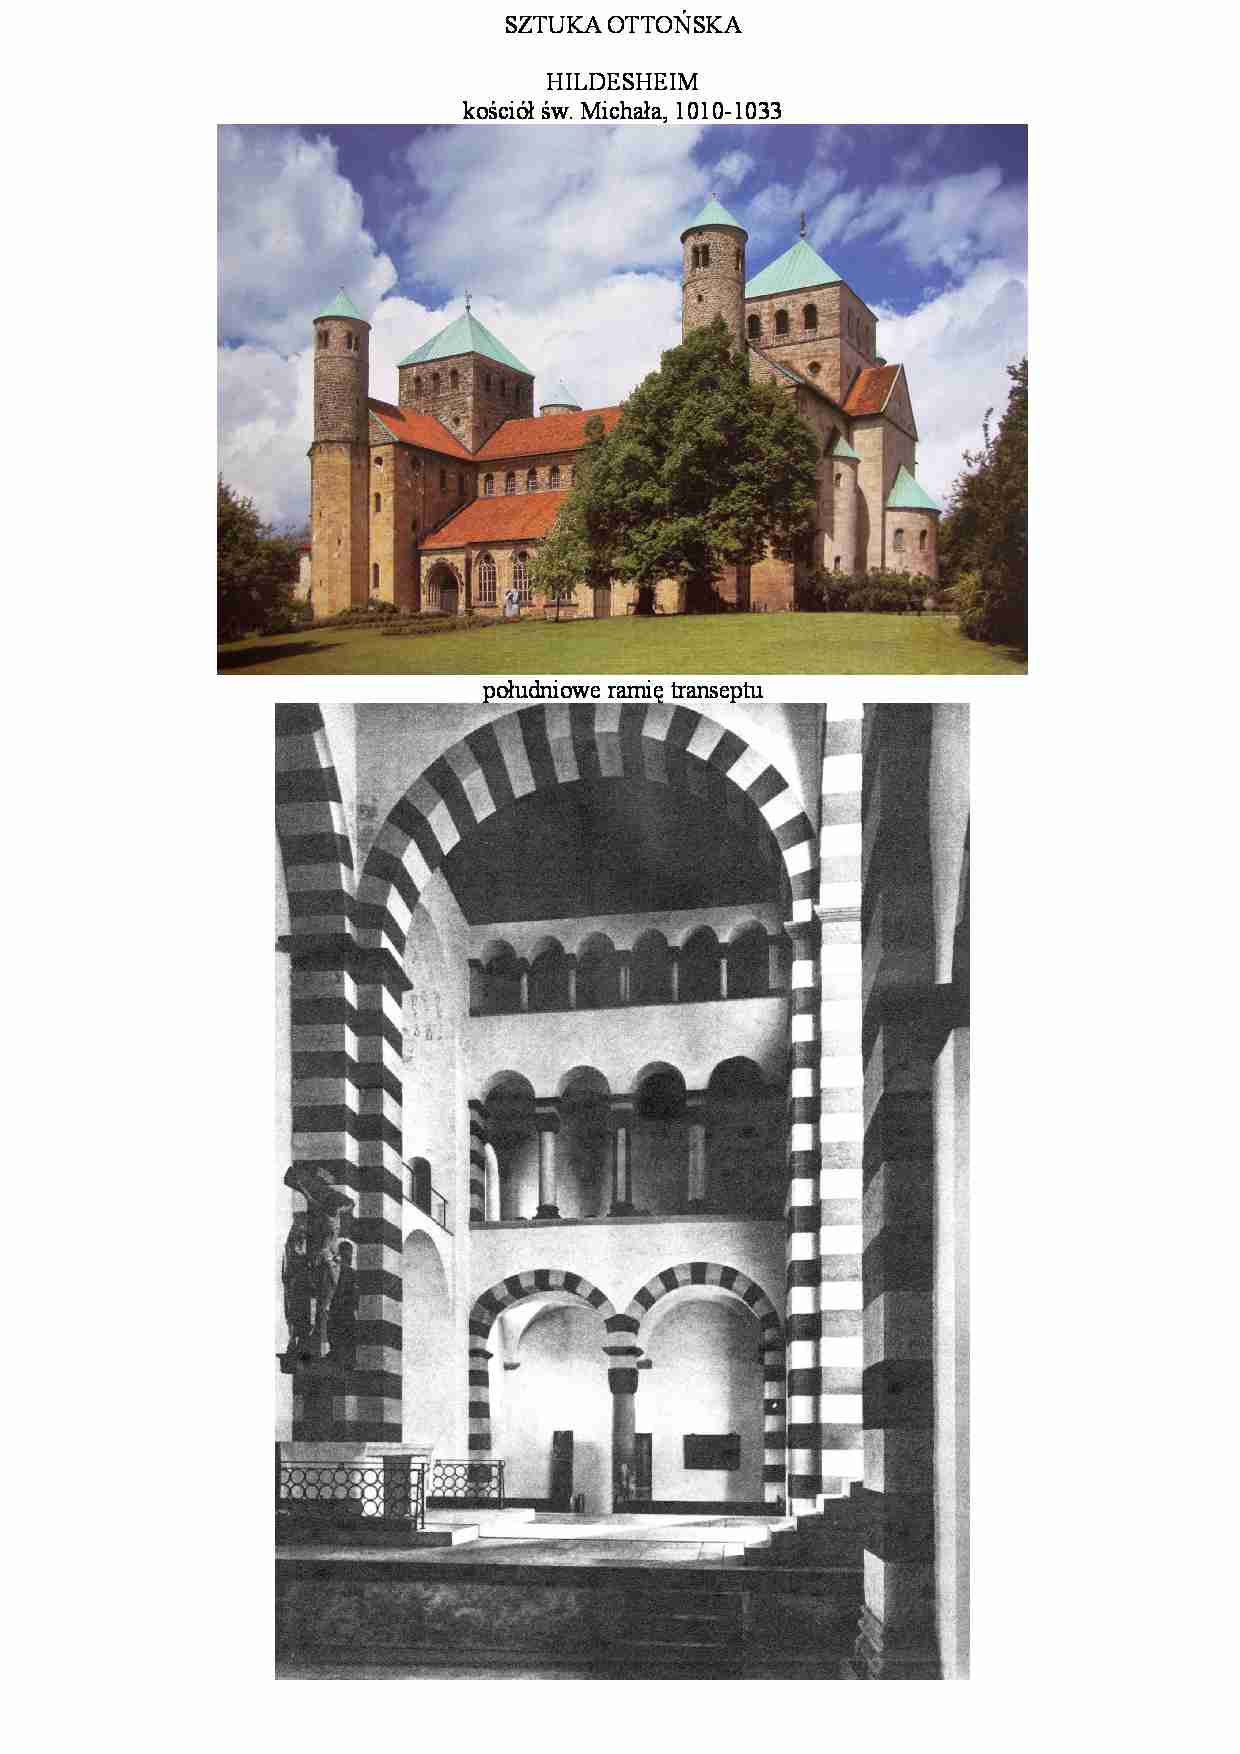 Sztuka ottońska-kościół św. Michała w hildesheim - strona 1